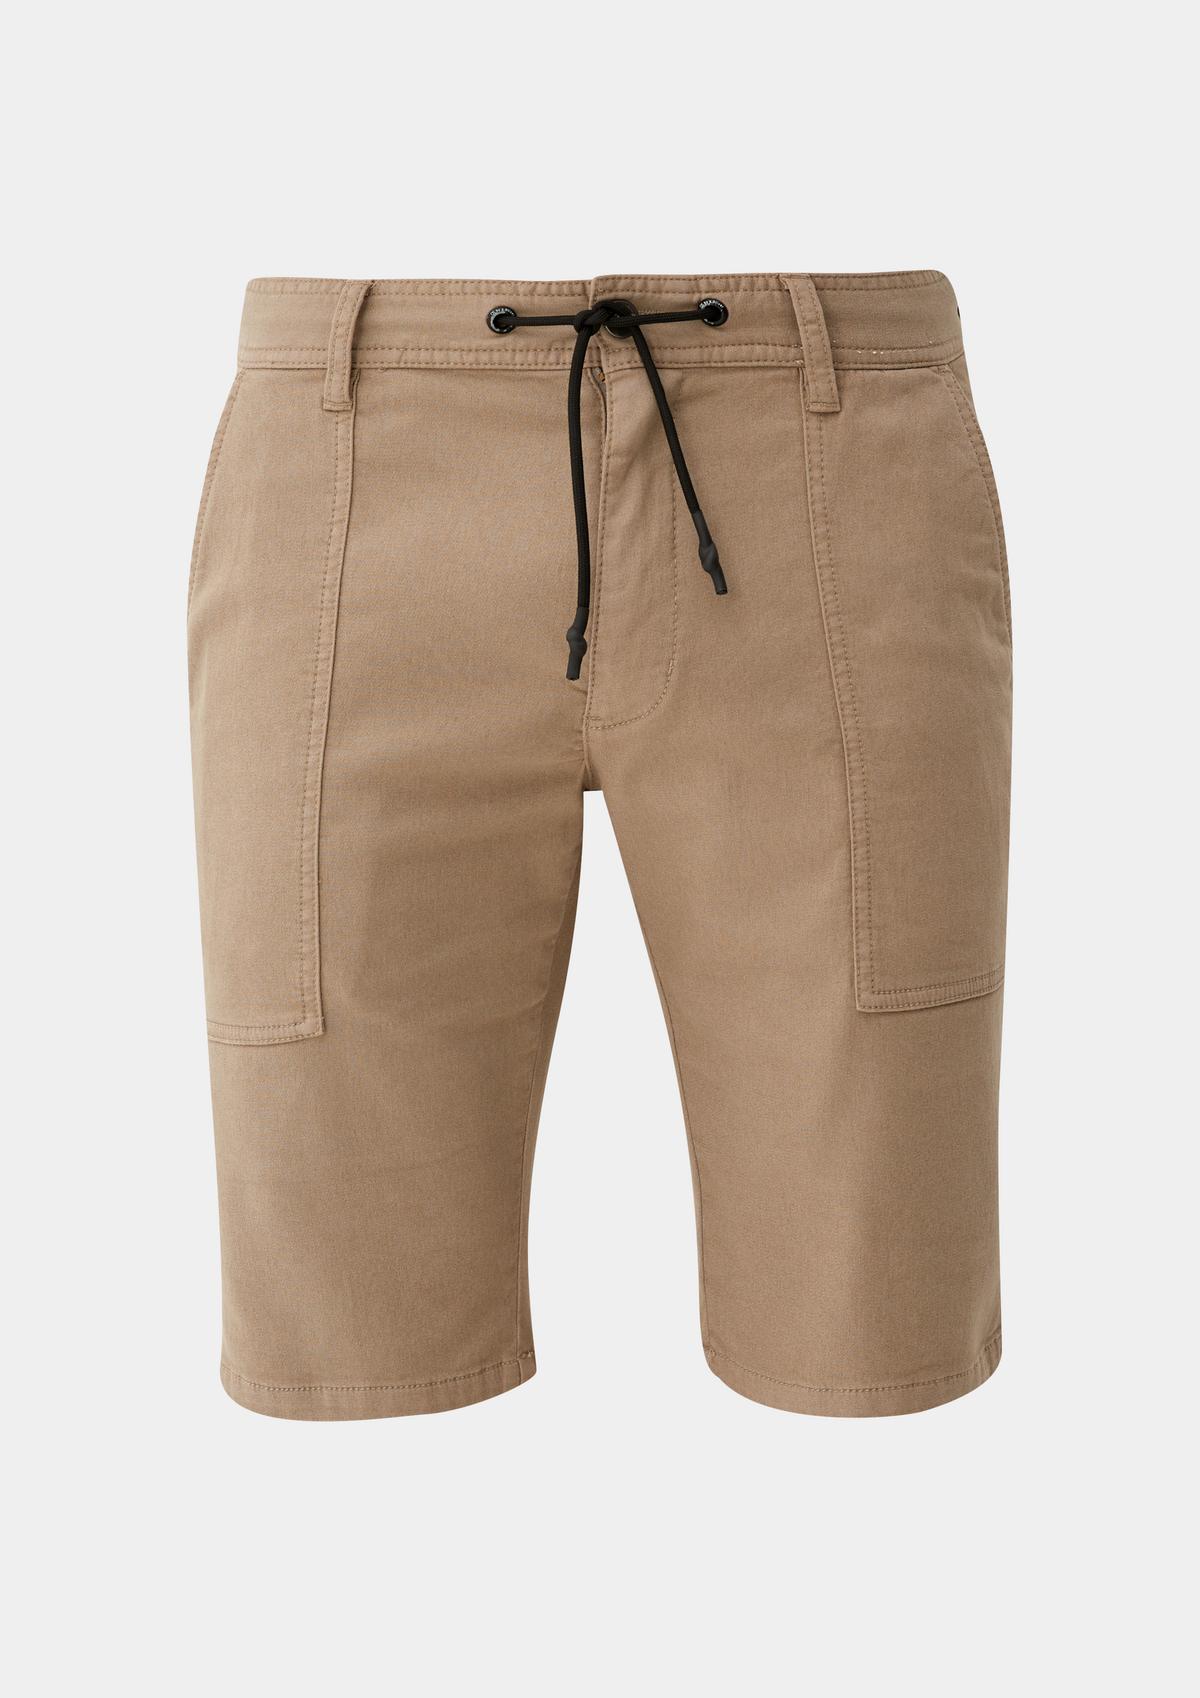 Plain Shorts for Men